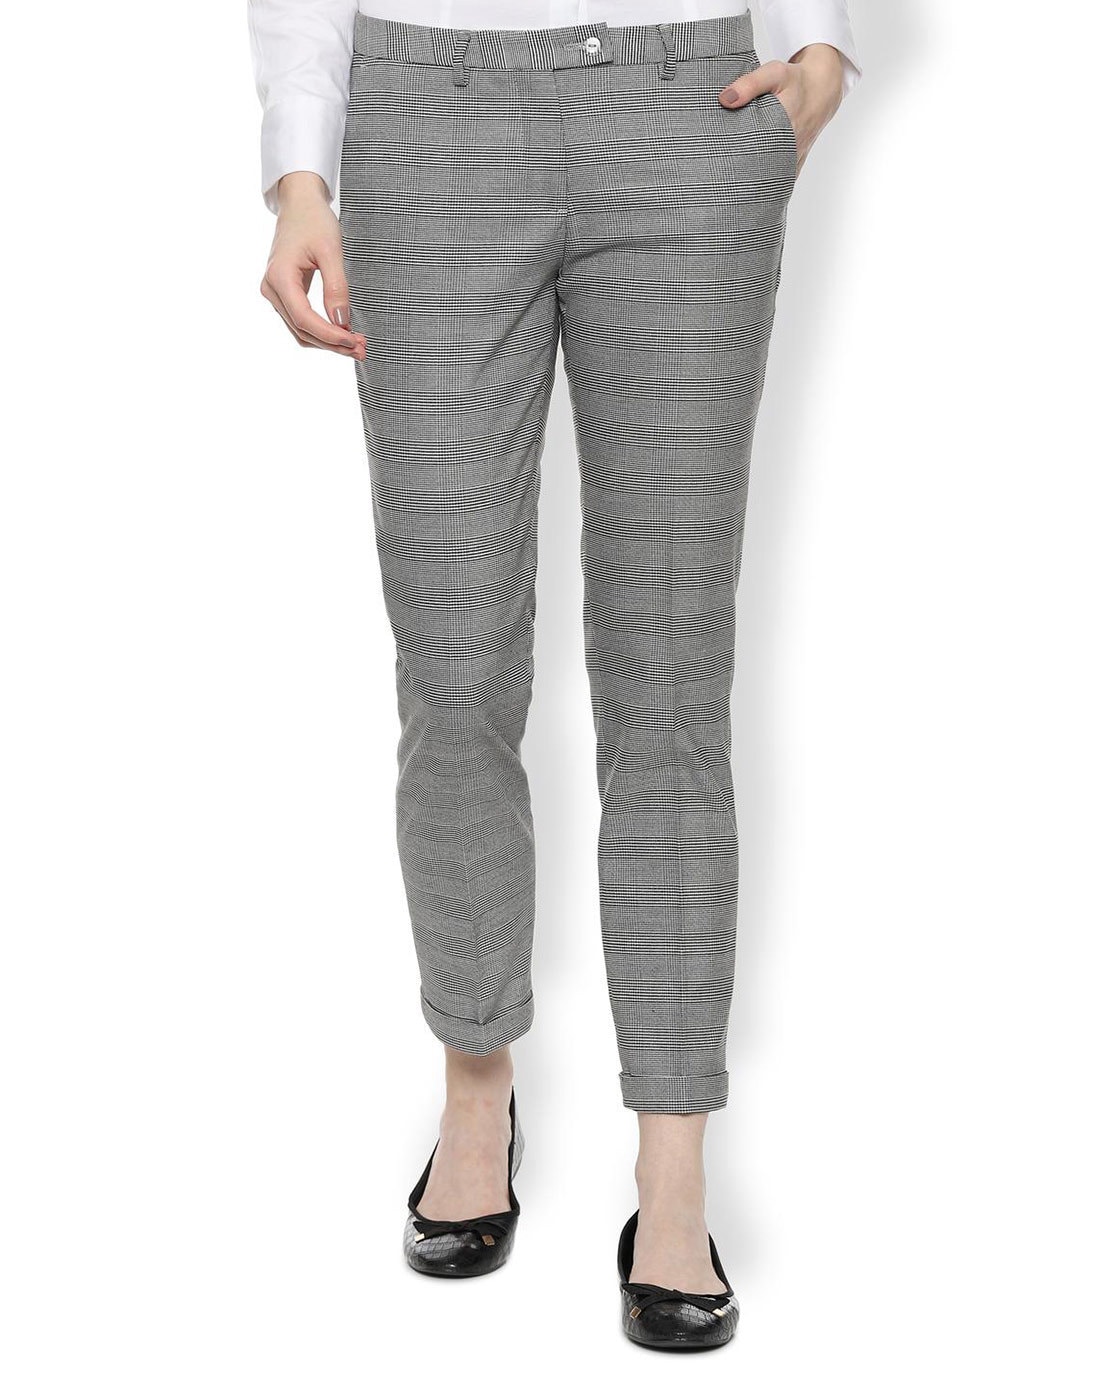 Buy Women Navy Solid Formal Regular Fit Trousers Online  699637  Van  Heusen